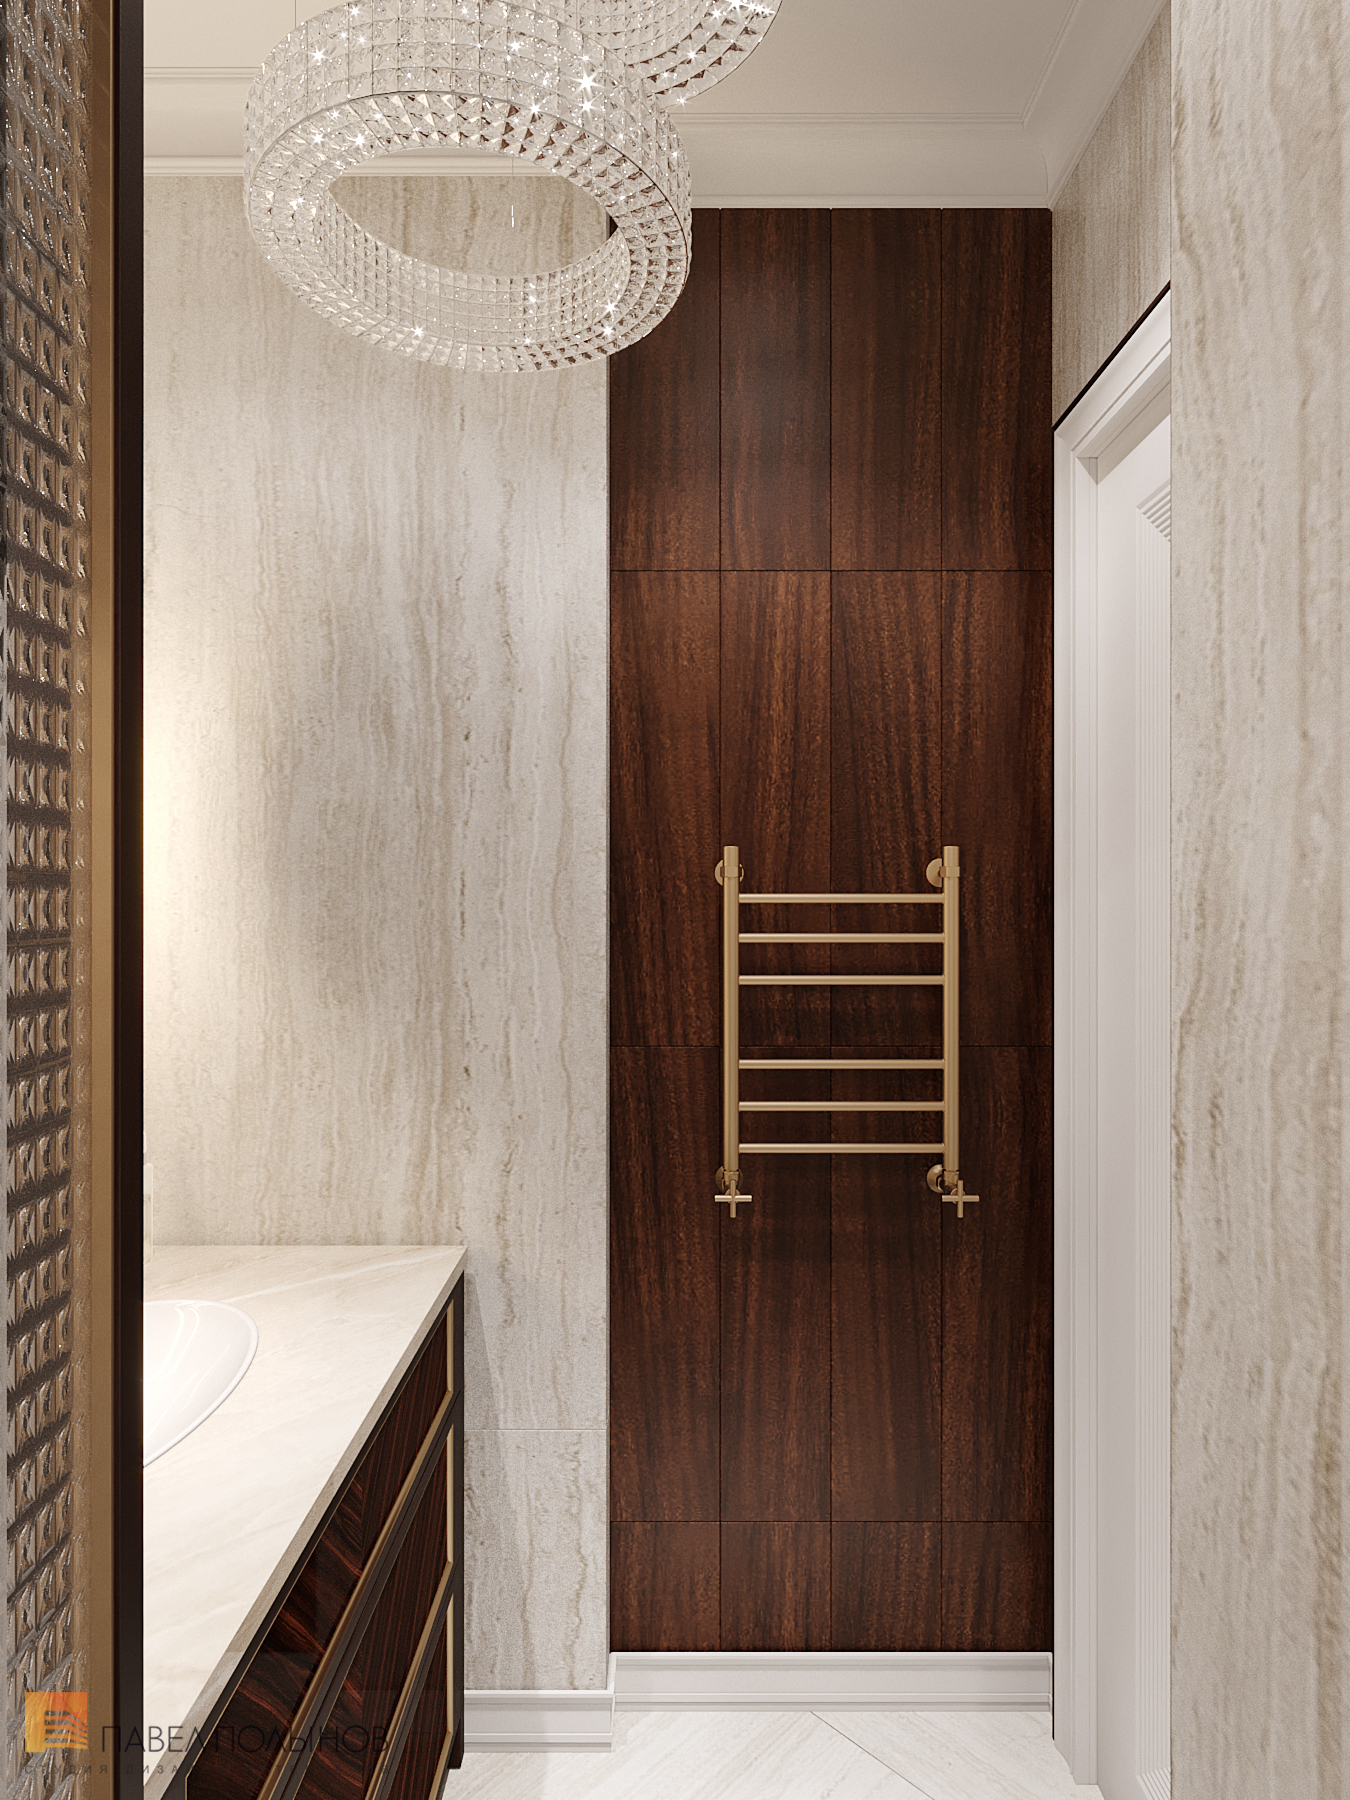 Фото дизайн ванной комнаты из проекта «Интерьер квартиры в стиле неоклассики с элементами ар-деко, ЖК «Rich Art Club», 75 кв.м.»